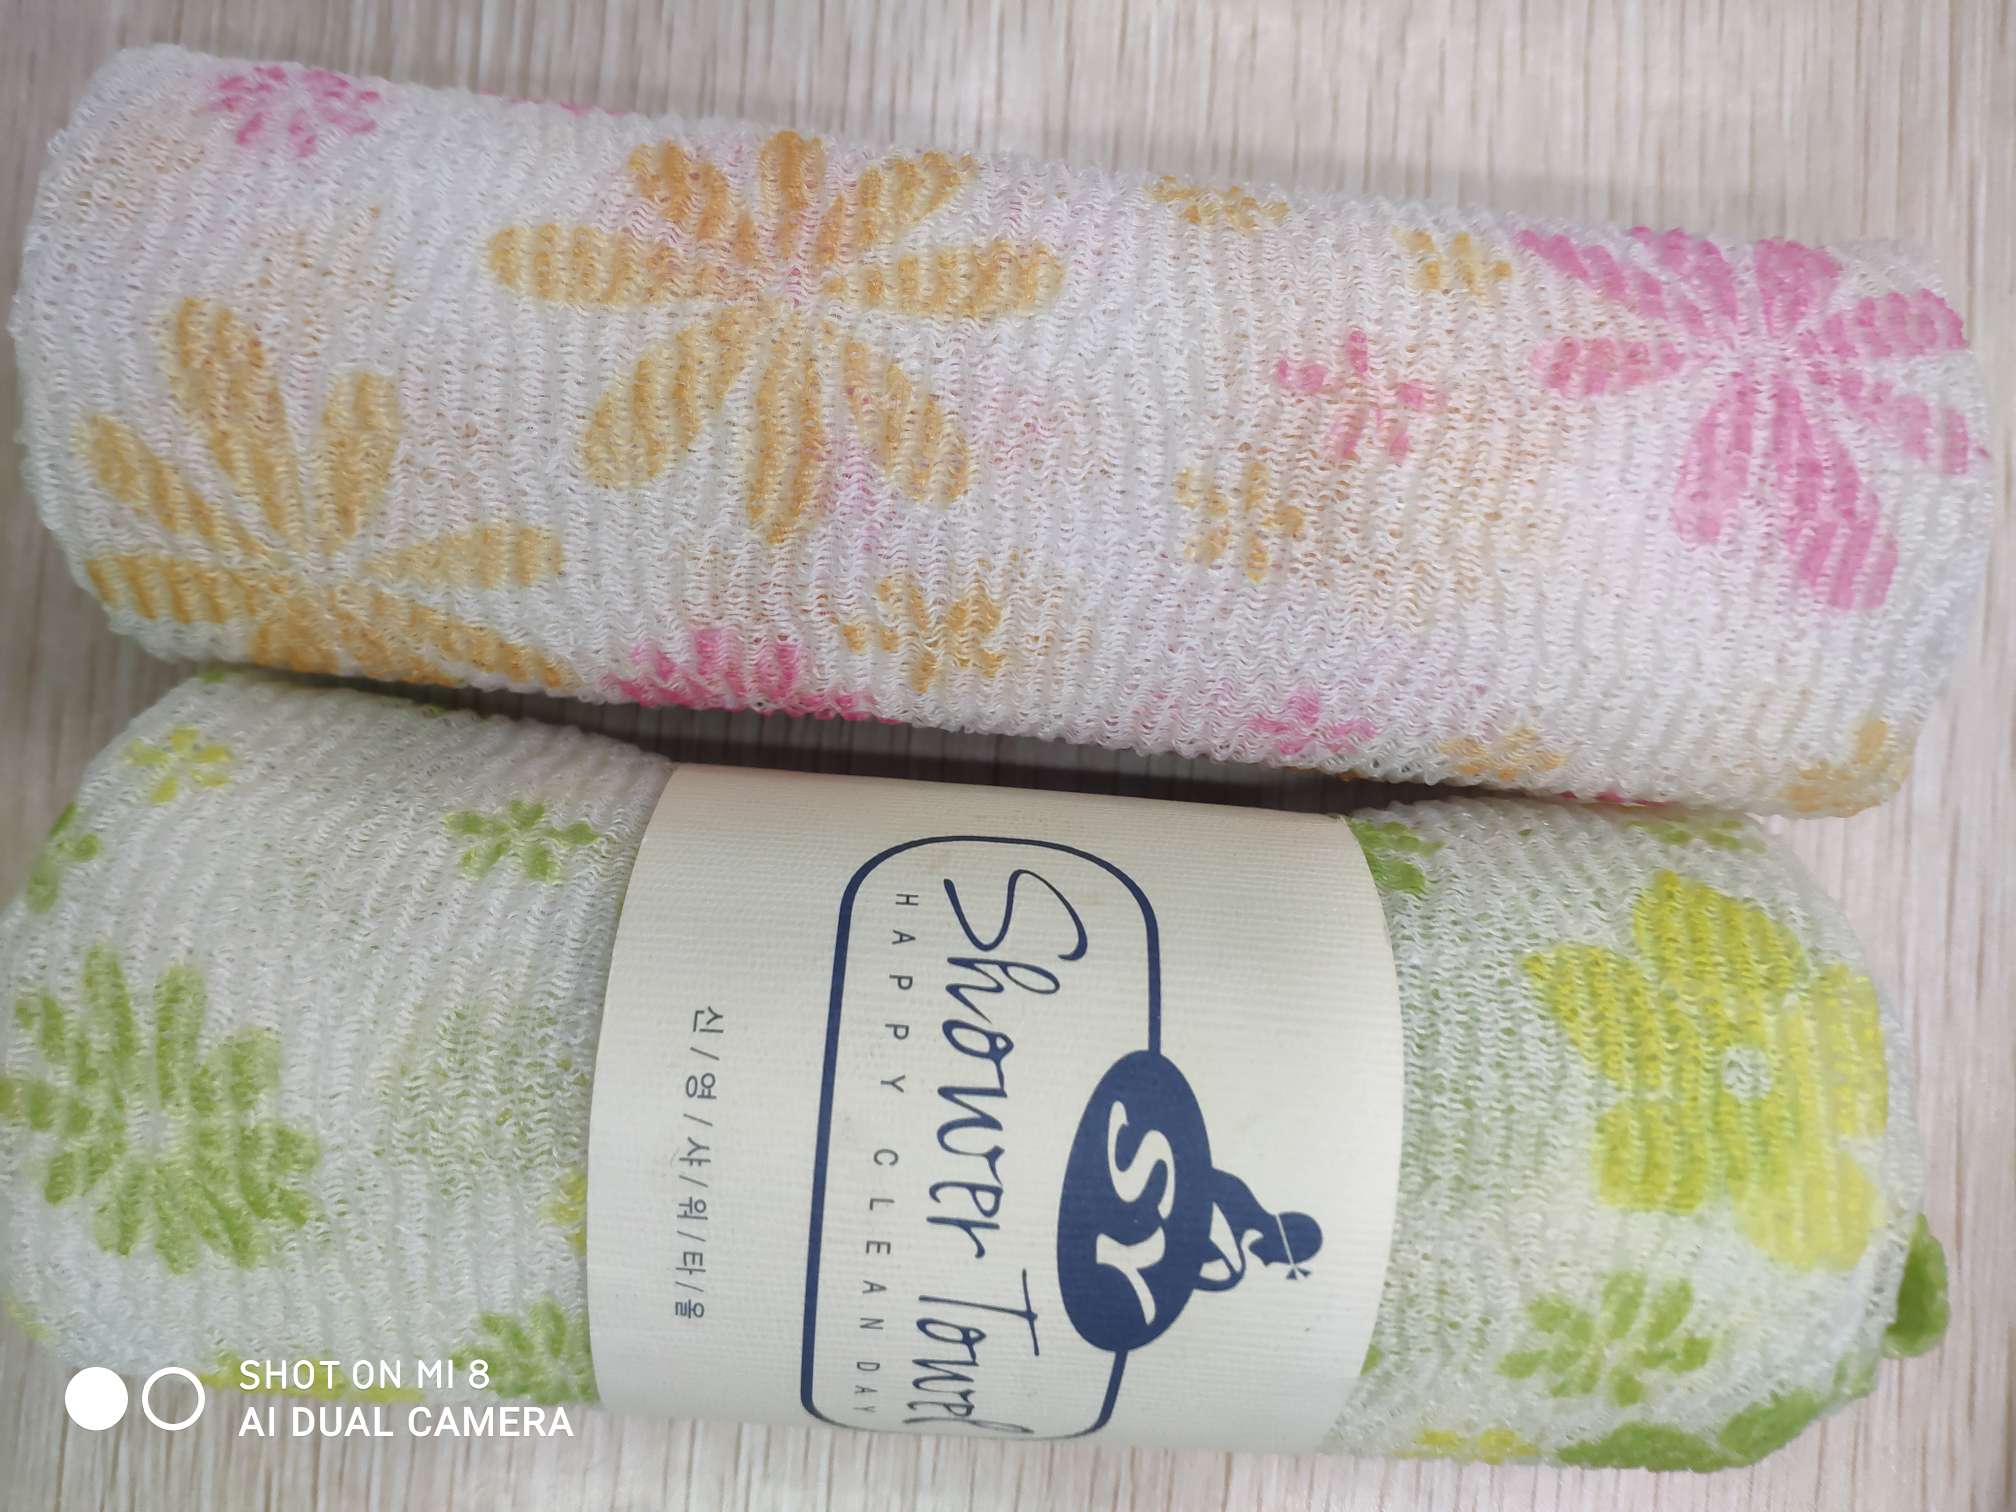 厨卫用品
沐浴用品
印花卷筒
搓澡巾
桑拿巾